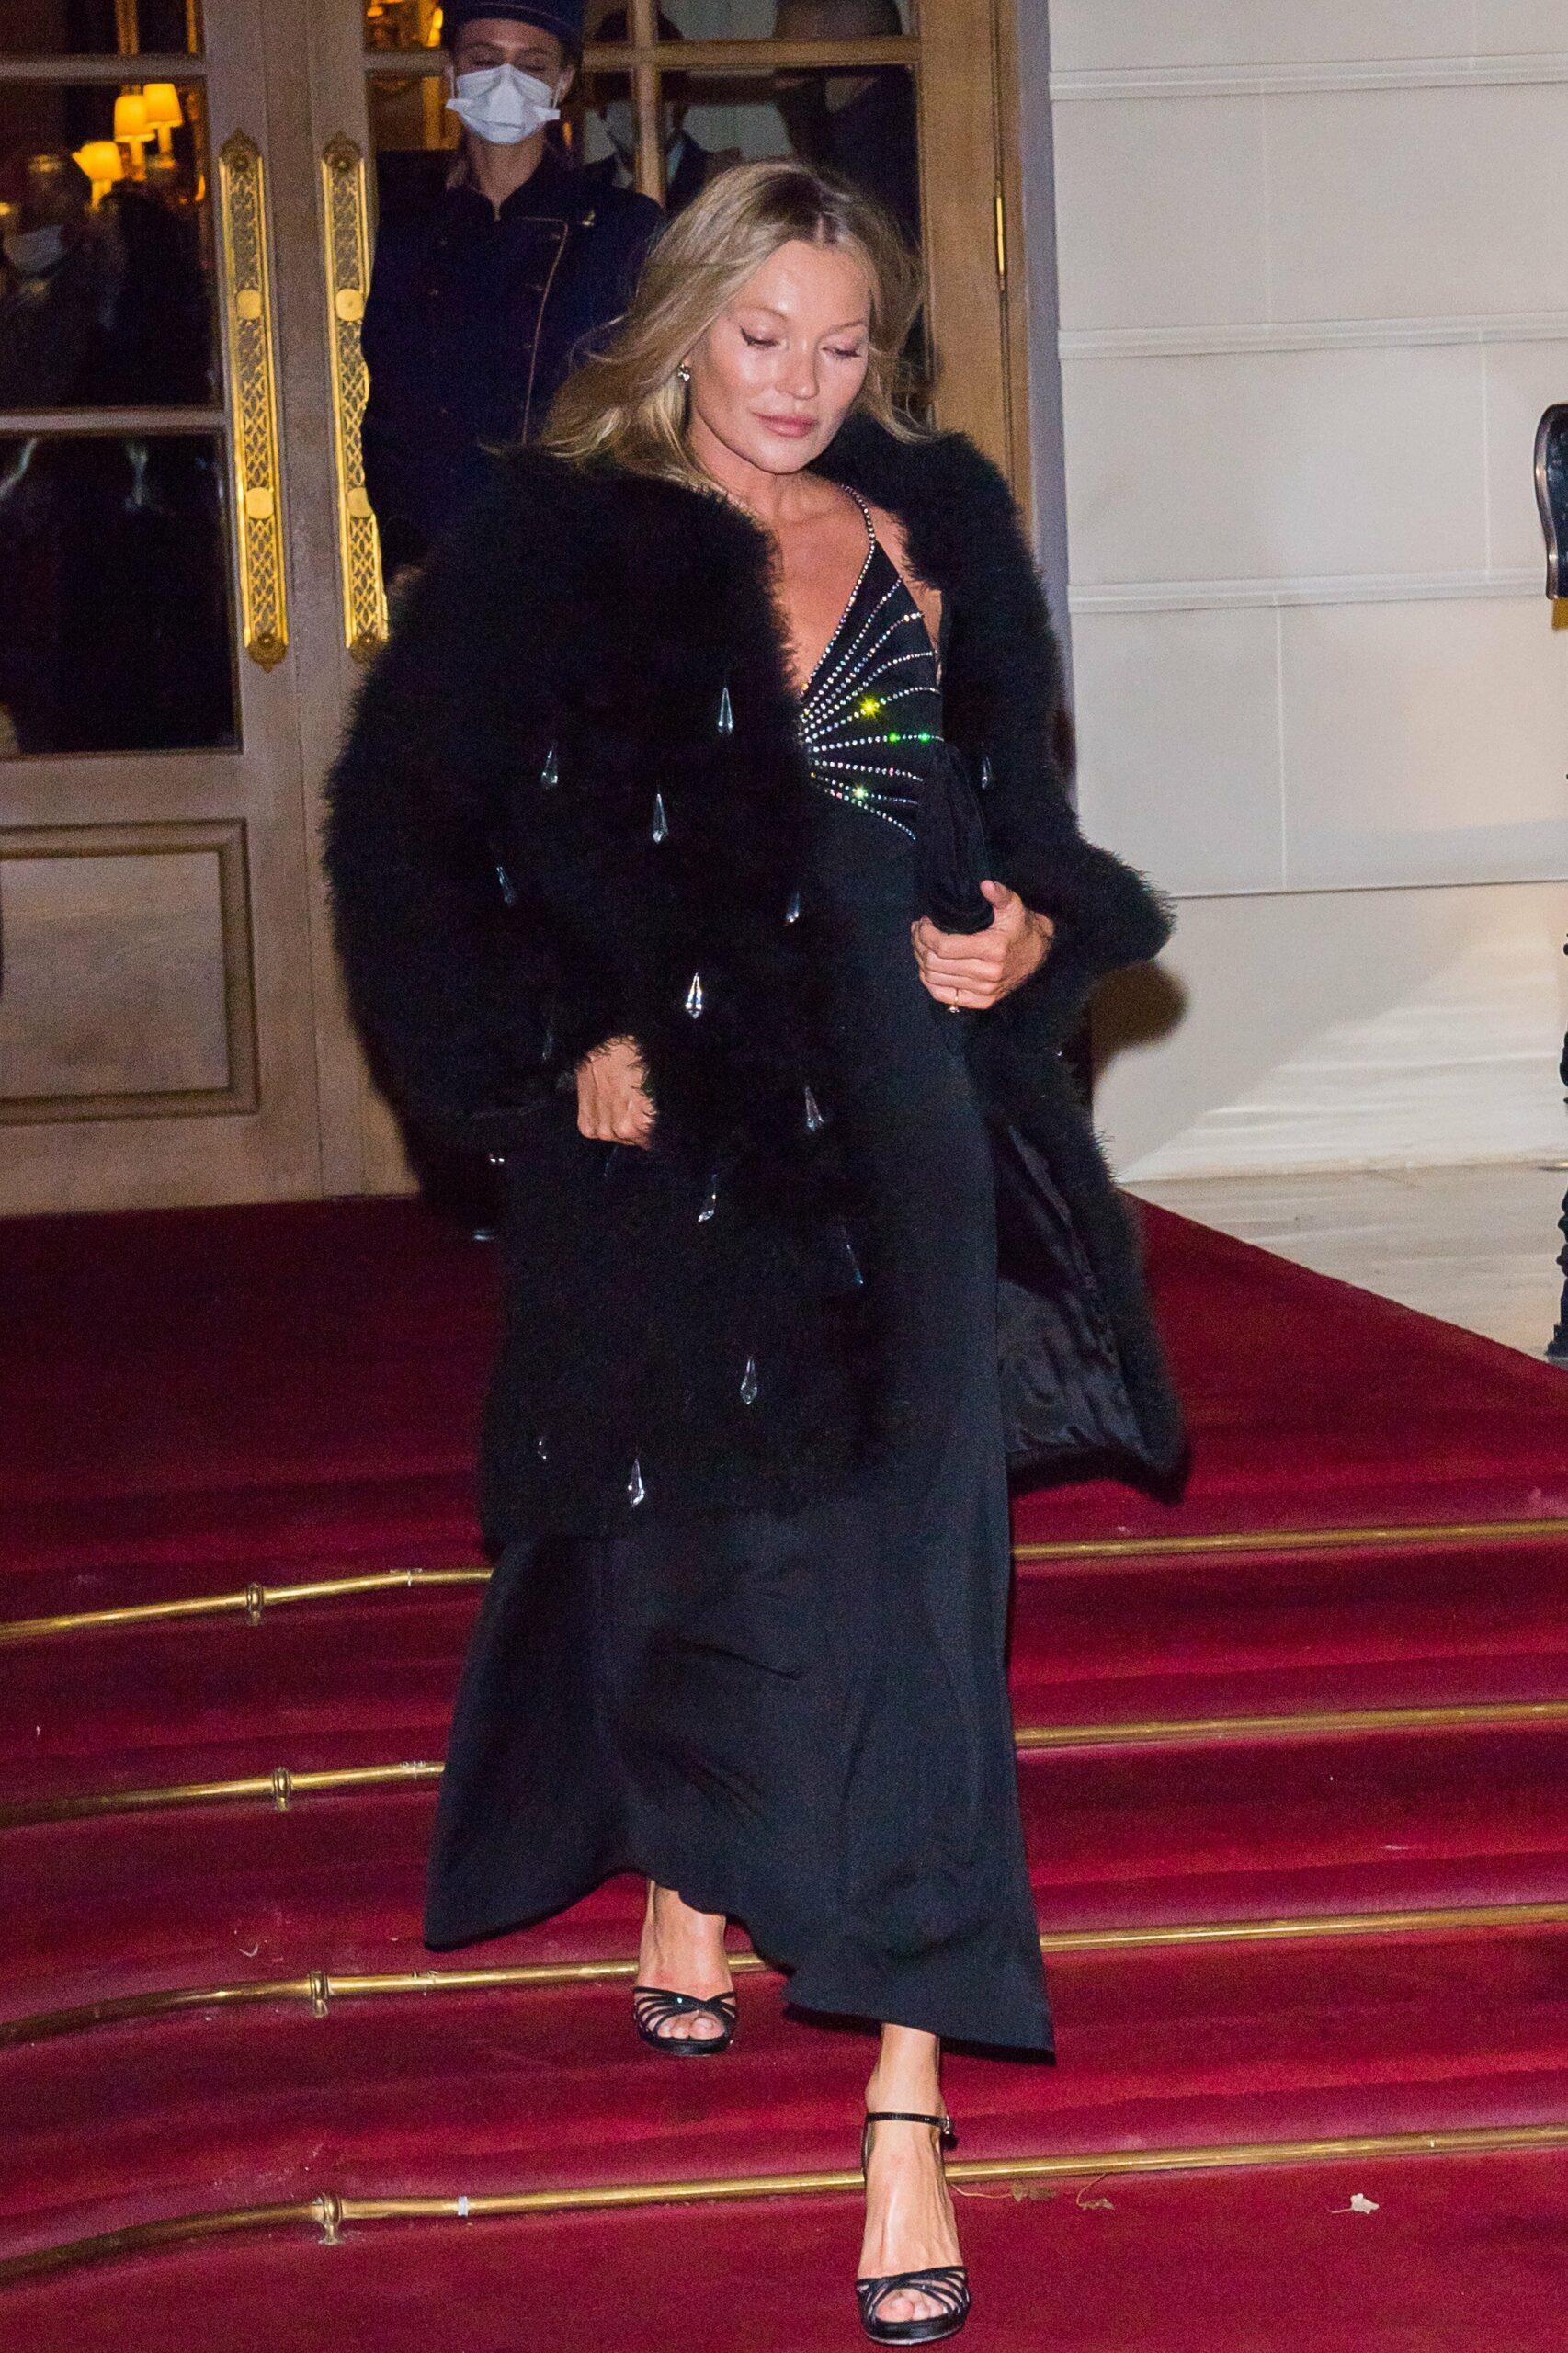 Kate Moss and Nikola von Bismark leave the Ritz hotel